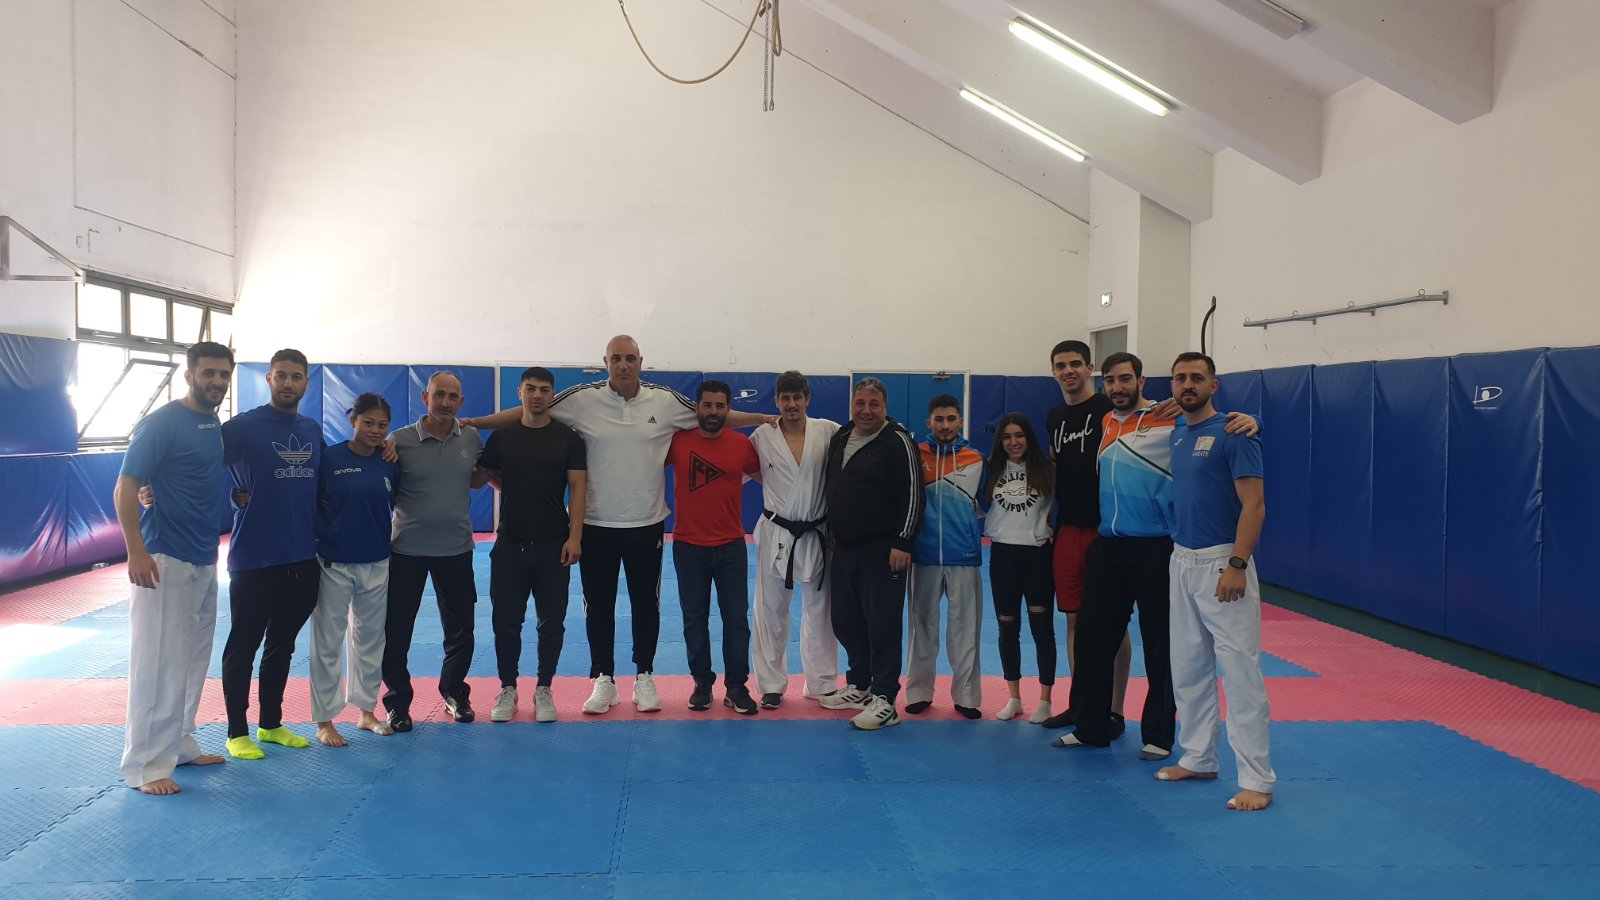 Προετοιμασία εθνικής ομάδας καράτε ανδρών και γυναικών για το Πανευρωπαικό πρωτάθλημα καράτε Ισπανίας